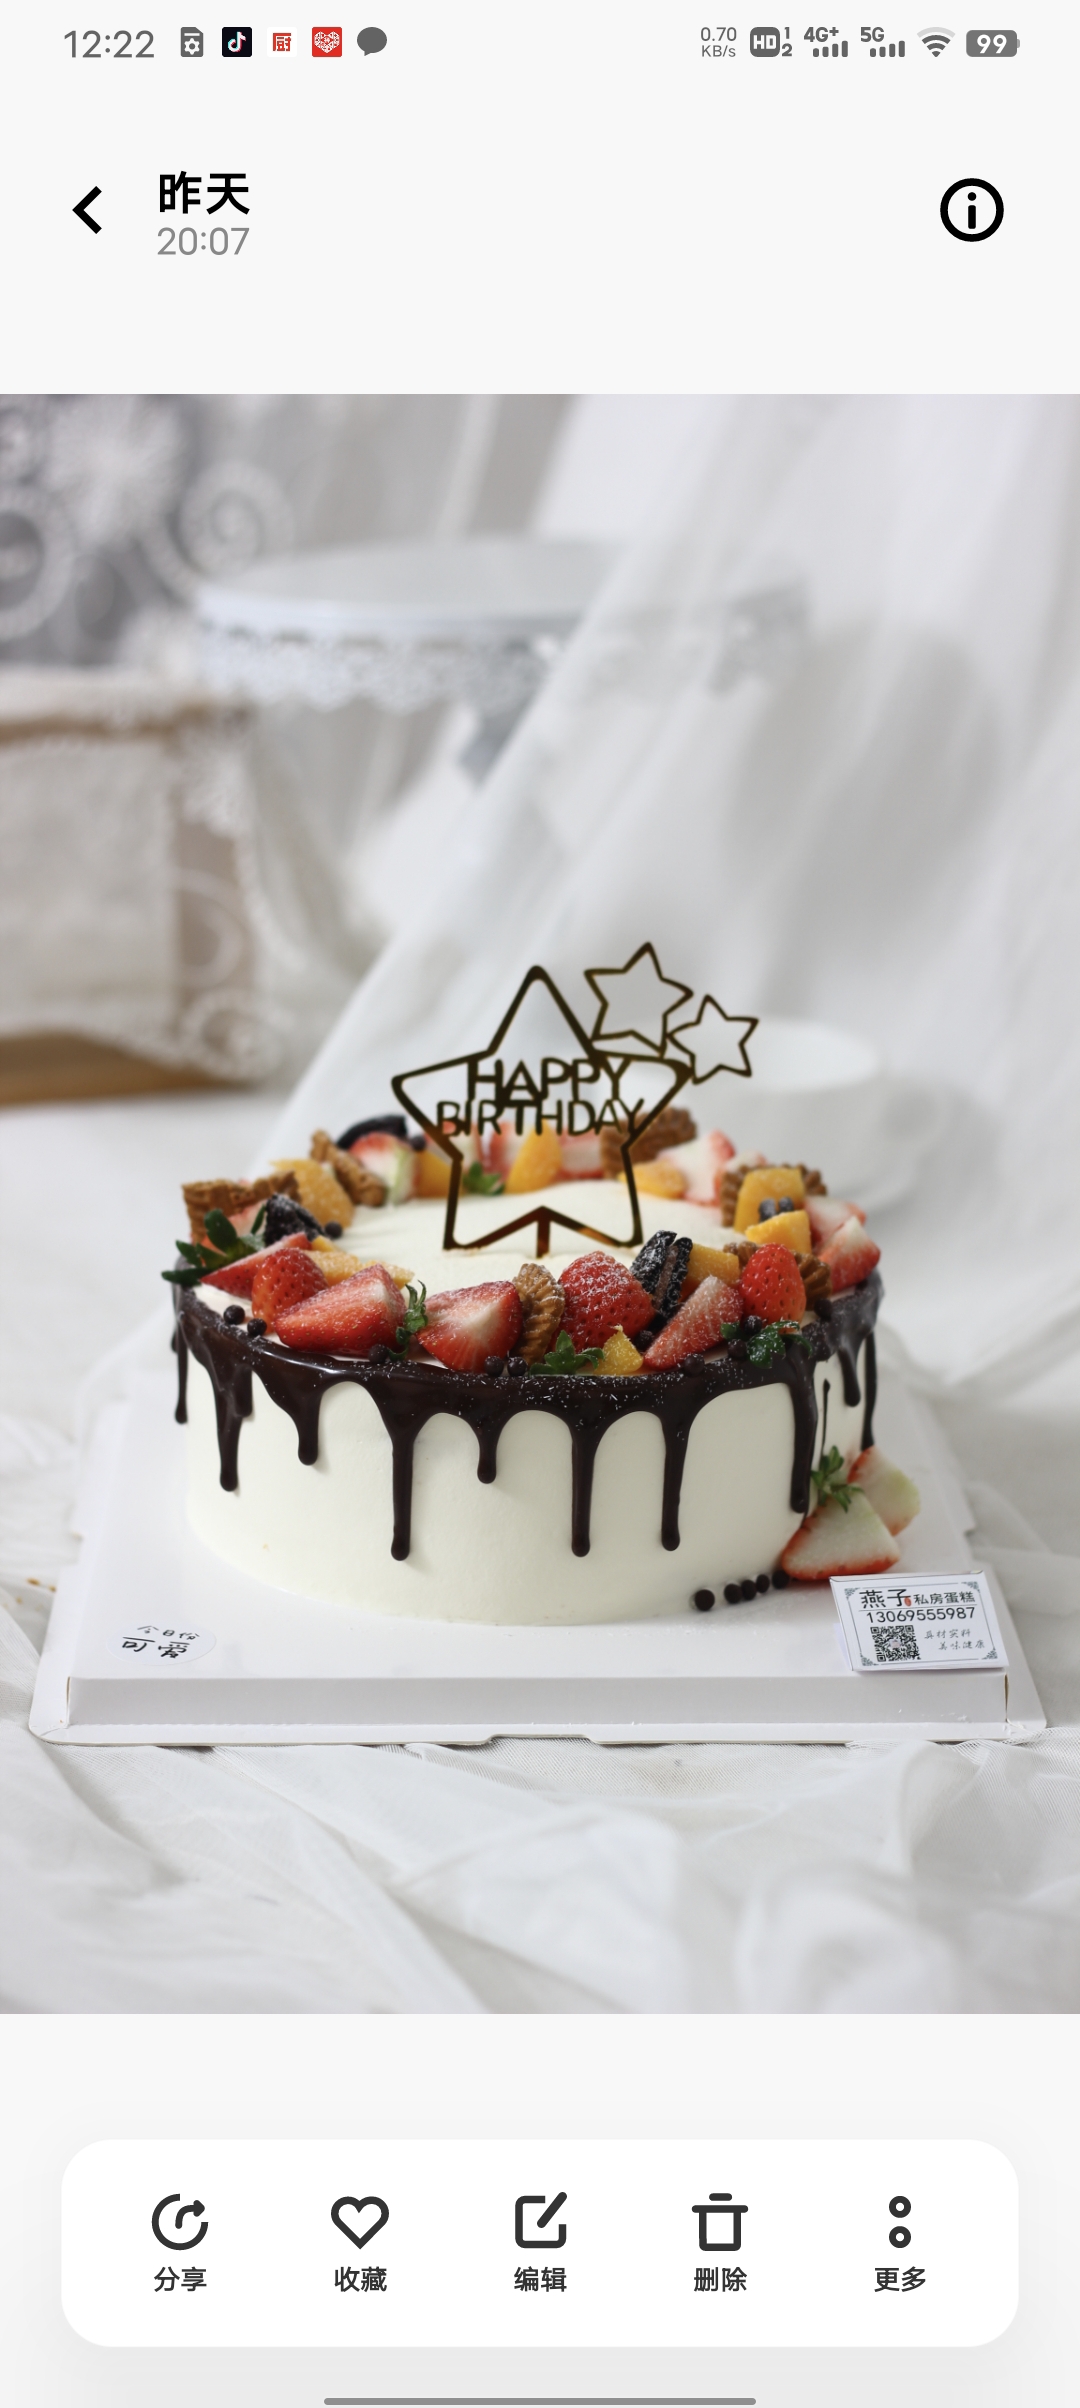 生日蛋糕款式分享(记录我做过的生日蛋糕)